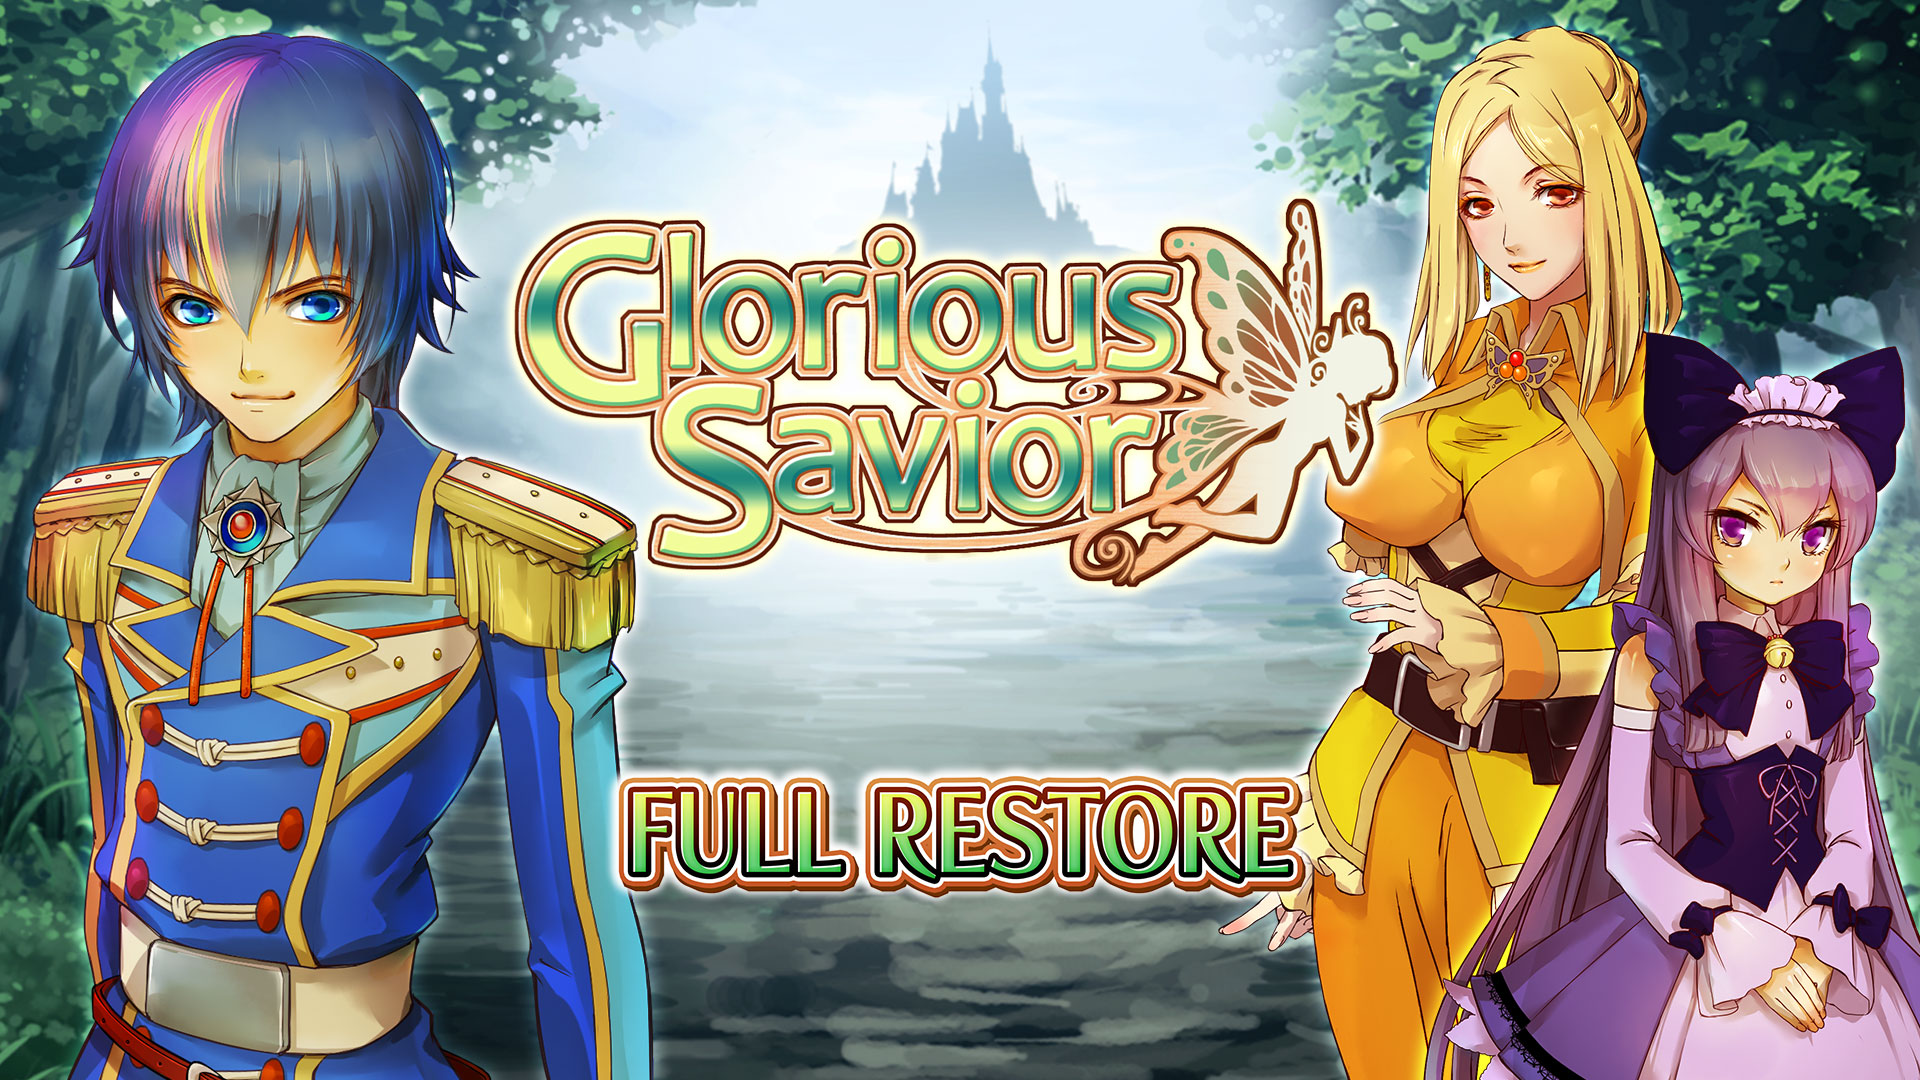 Full Restore - Glorious Savior